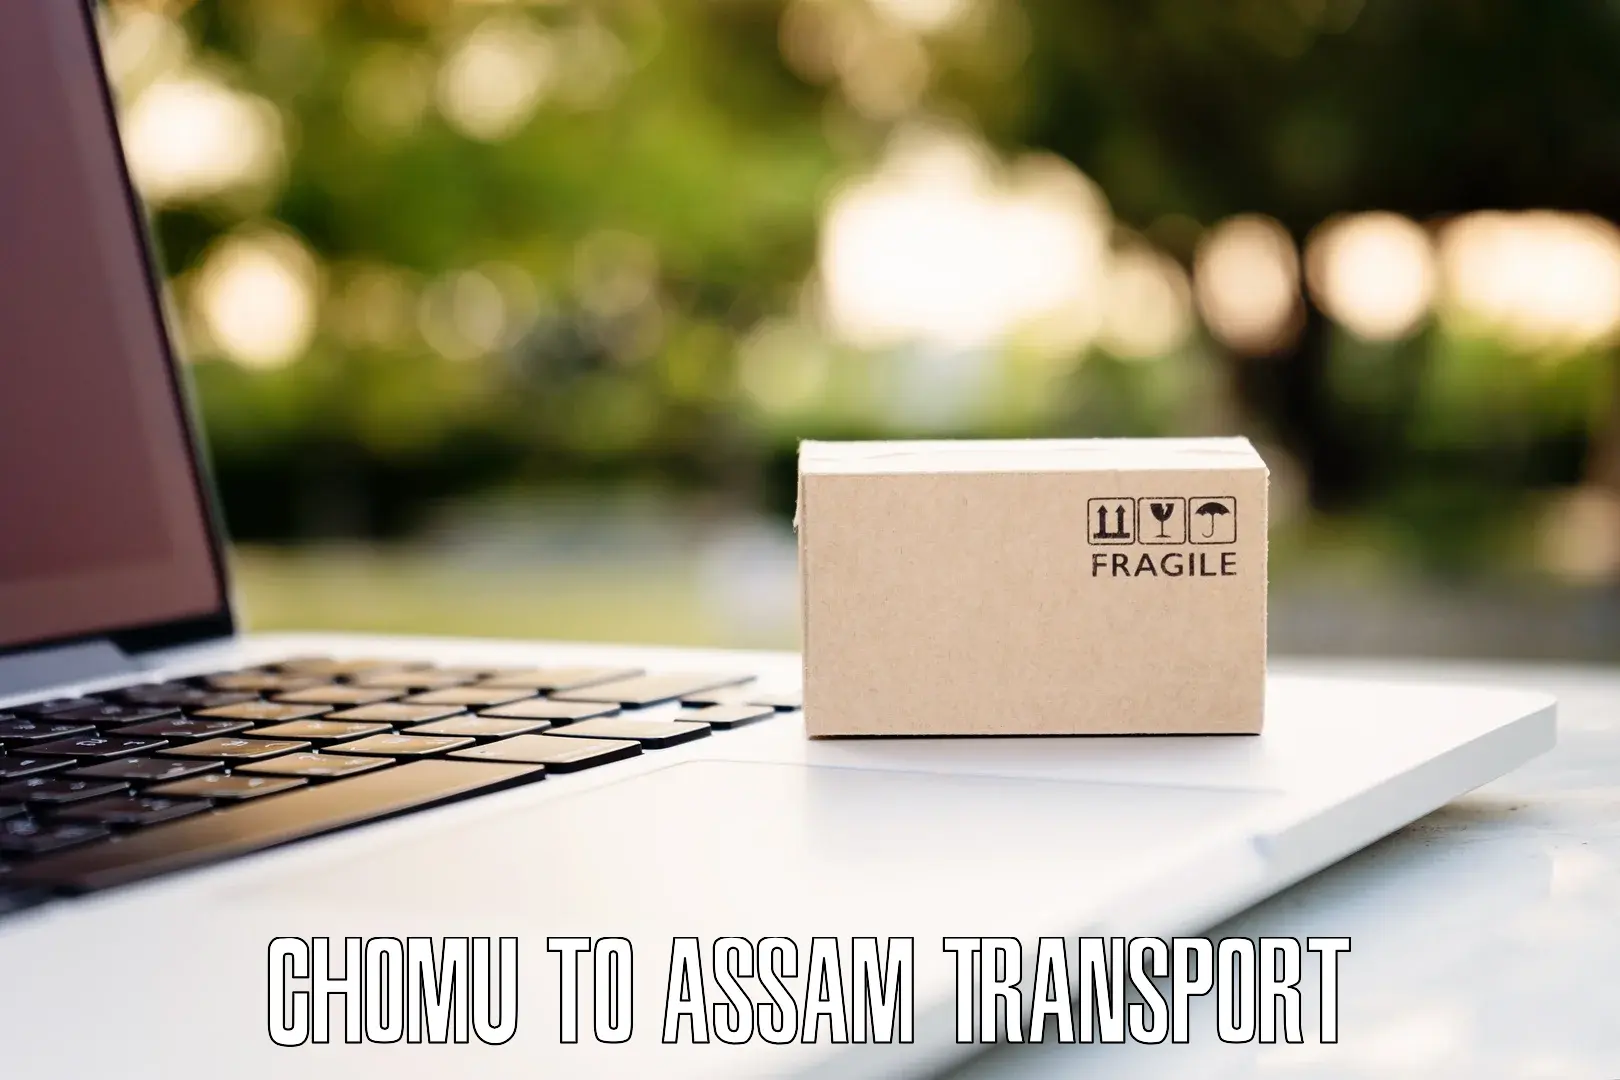 Online transport Chomu to Biswanath